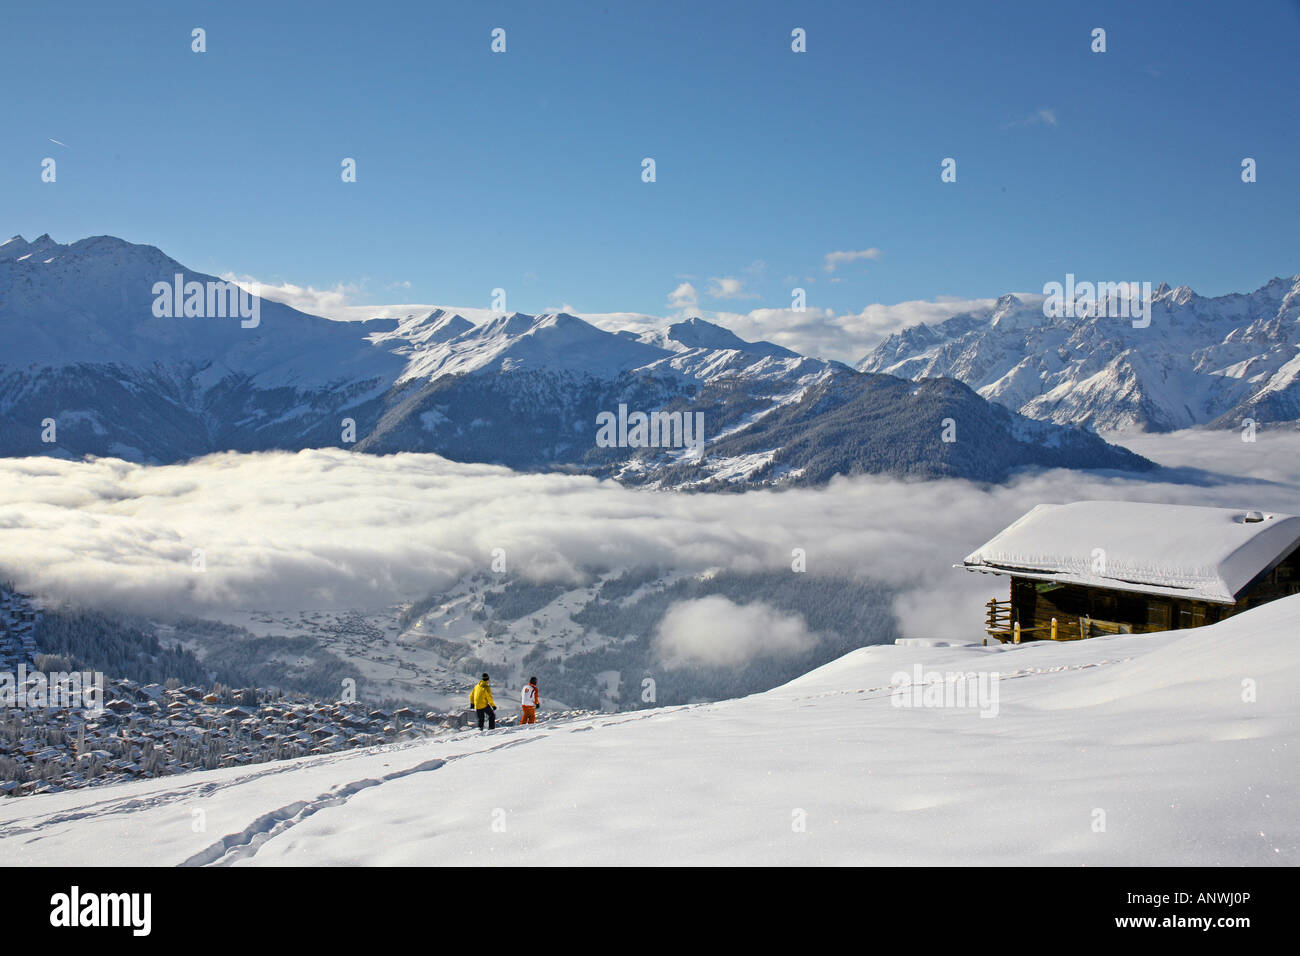 The ski resort of Verbier Switzerland Stock Photo